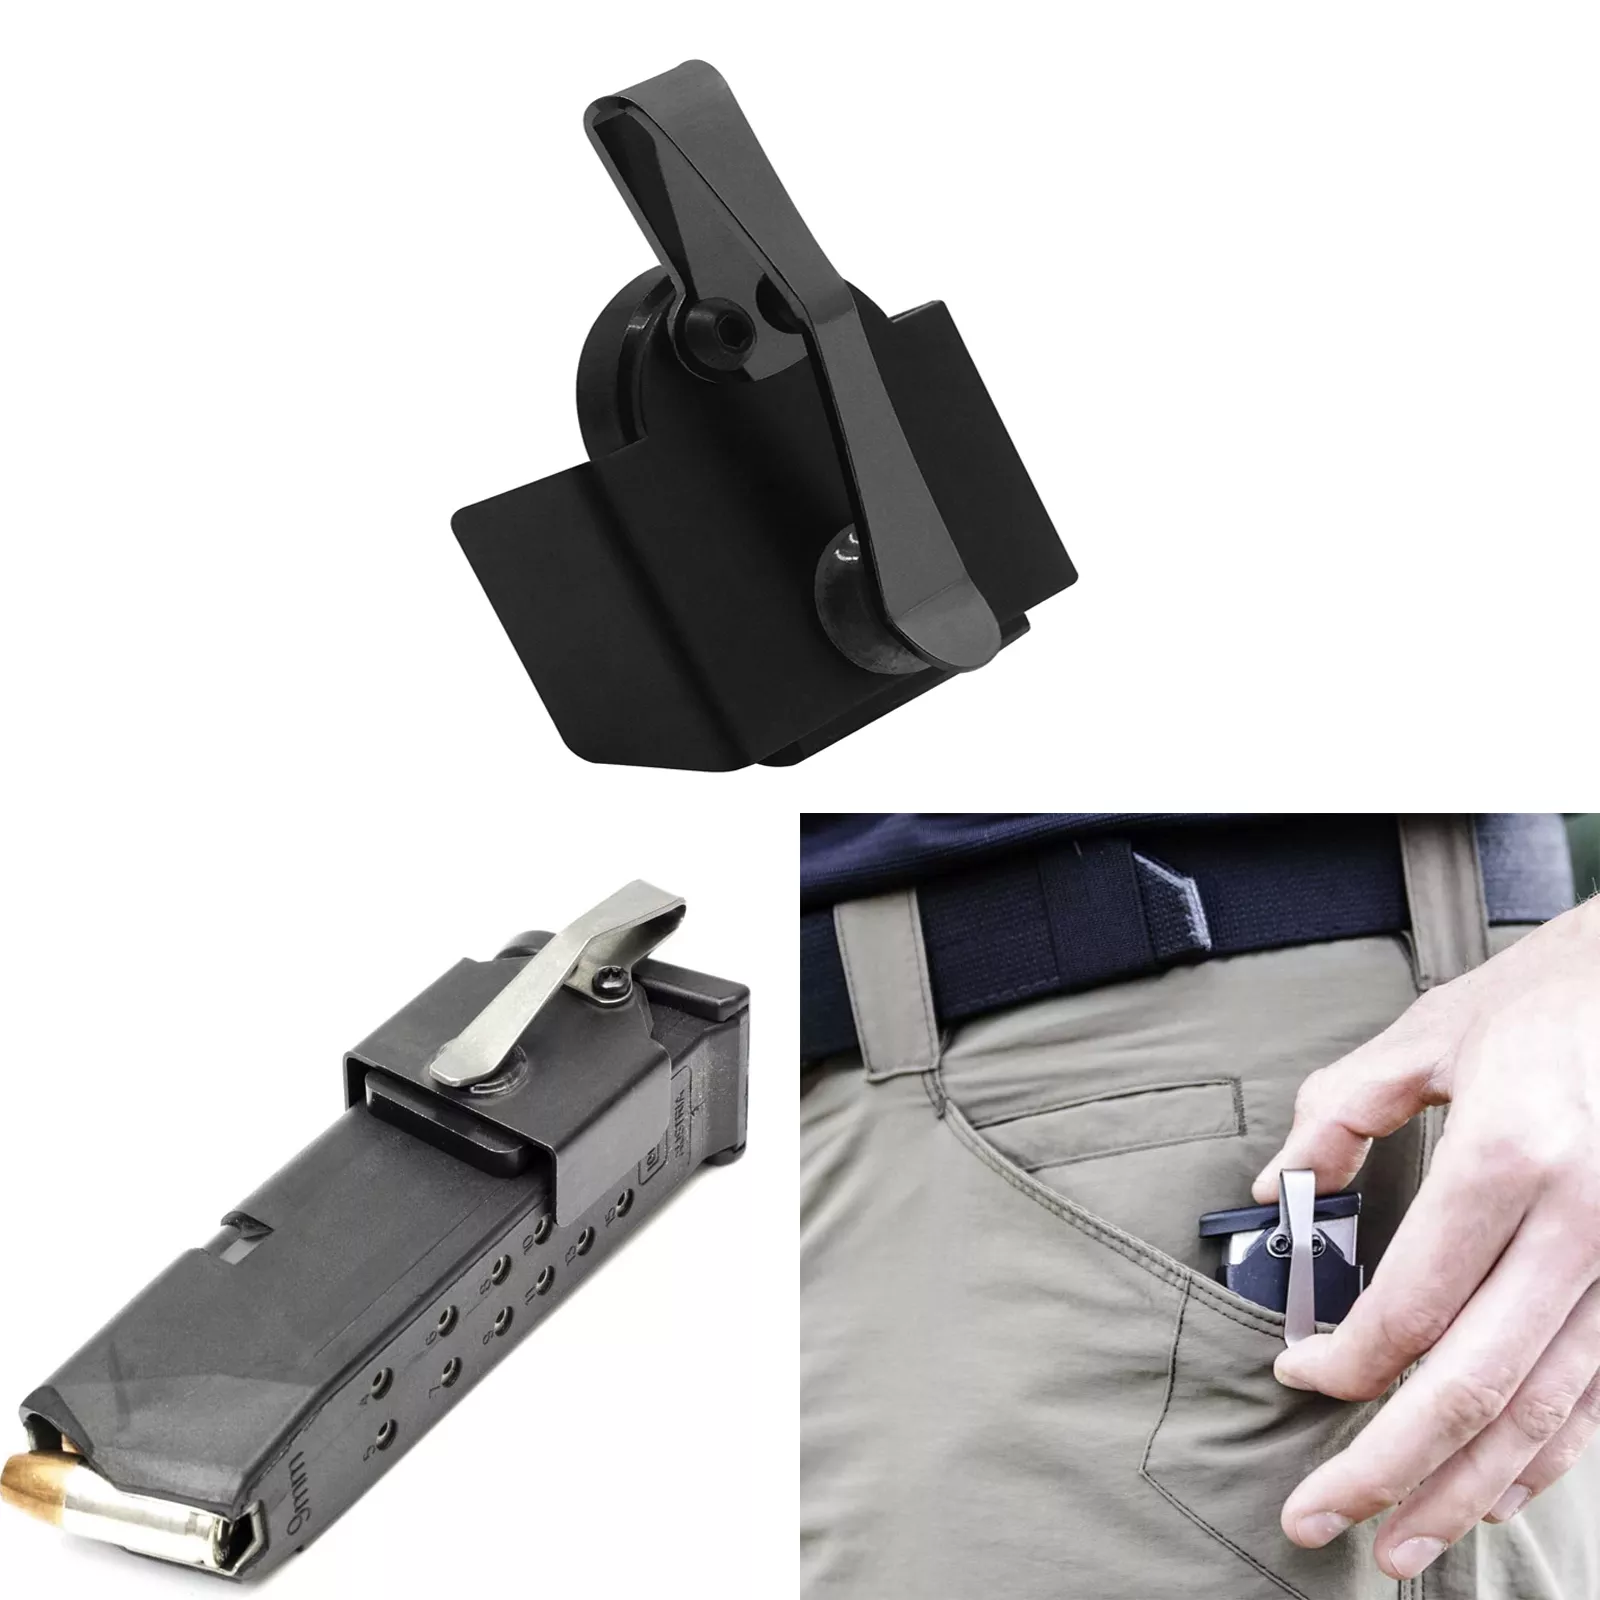 마그네틱 포켓 매거진 홀더 9mm / .40 S & W 용 포켓 표준 클립용 헤비 듀티 매거진 홀더